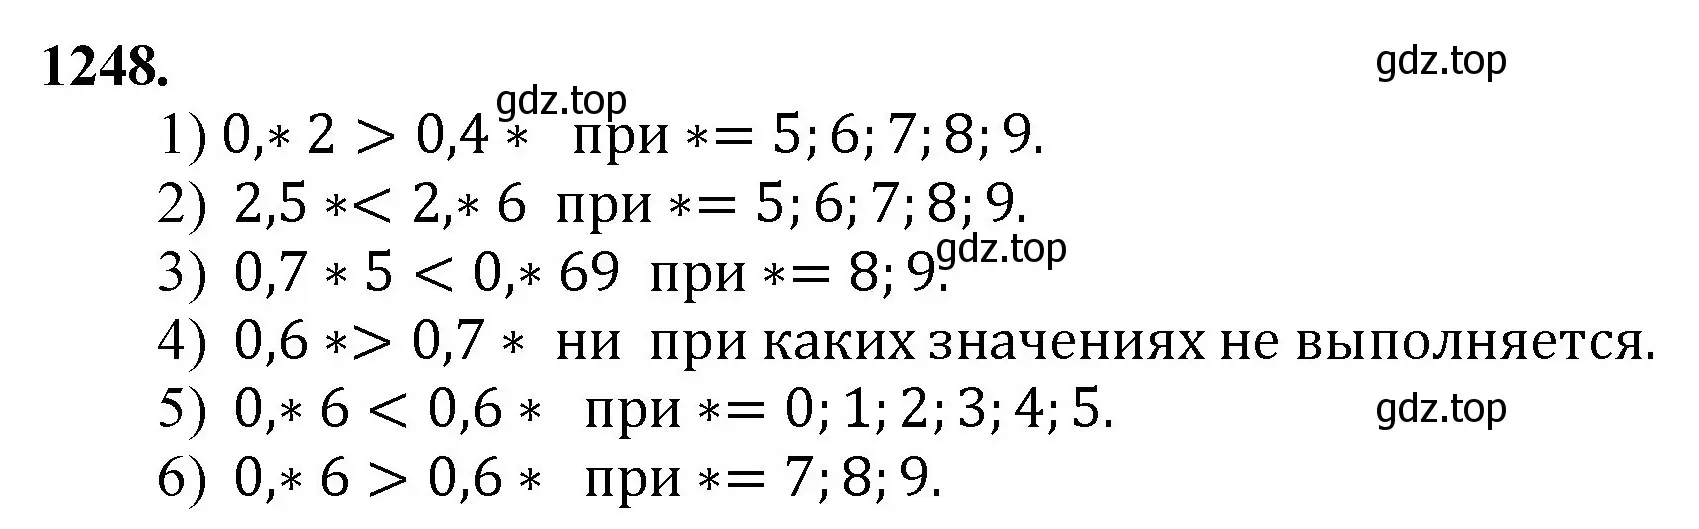 Решение номер 1248 (страница 275) гдз по математике 5 класс Мерзляк, Полонский, учебник